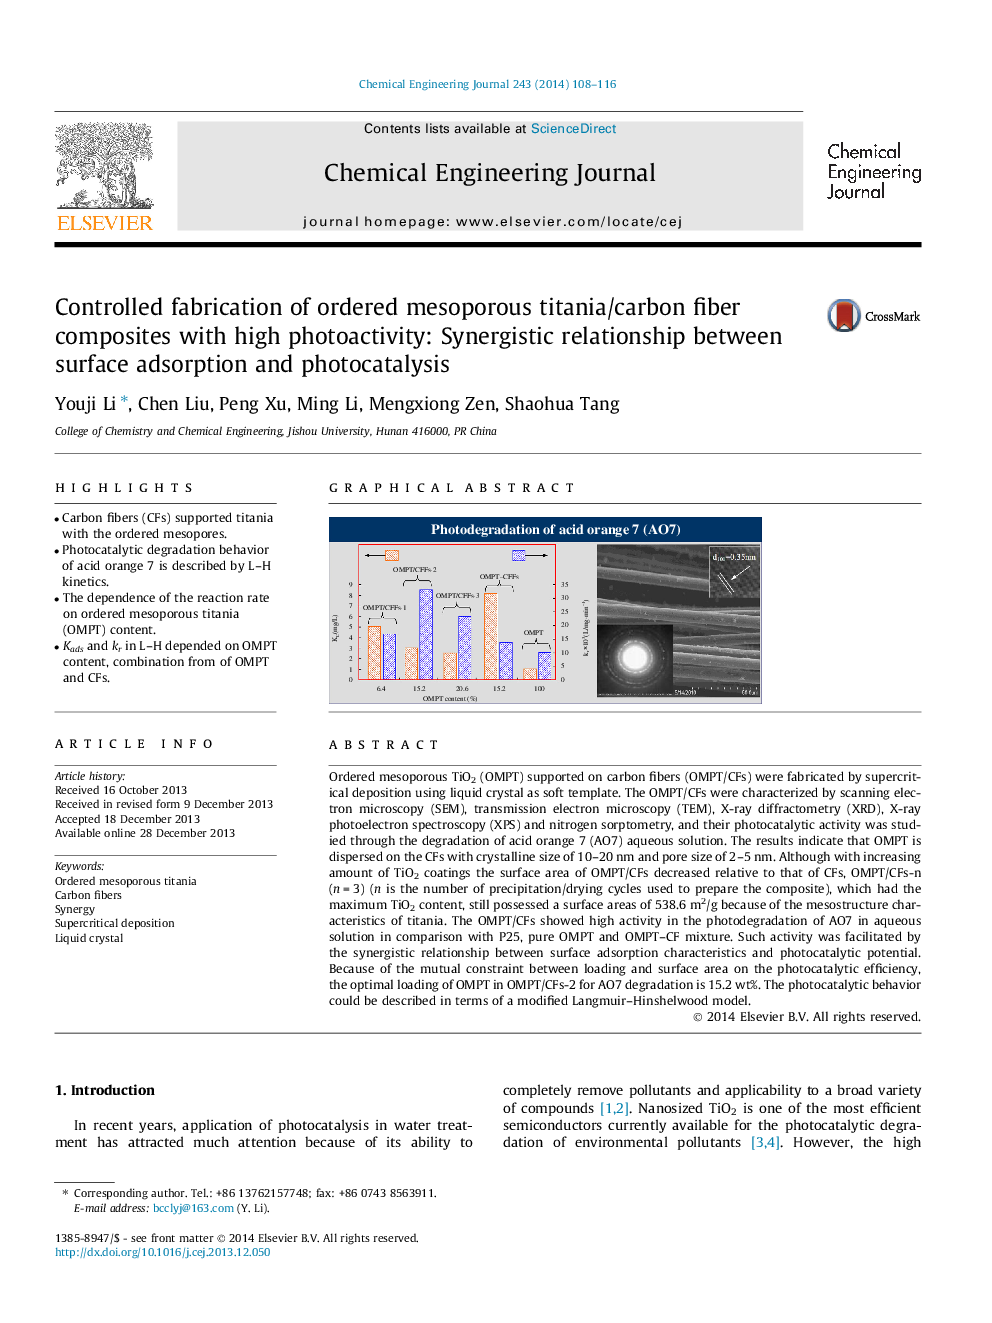 تولید کنترل شده کامپوزیت های فیبر کربنیک تیتانیوم / کربنی مشروپور معمولی با عکسبرداری بالا: رابطه همسازانه بین جذب سطحی و فوتوکاتالیز 